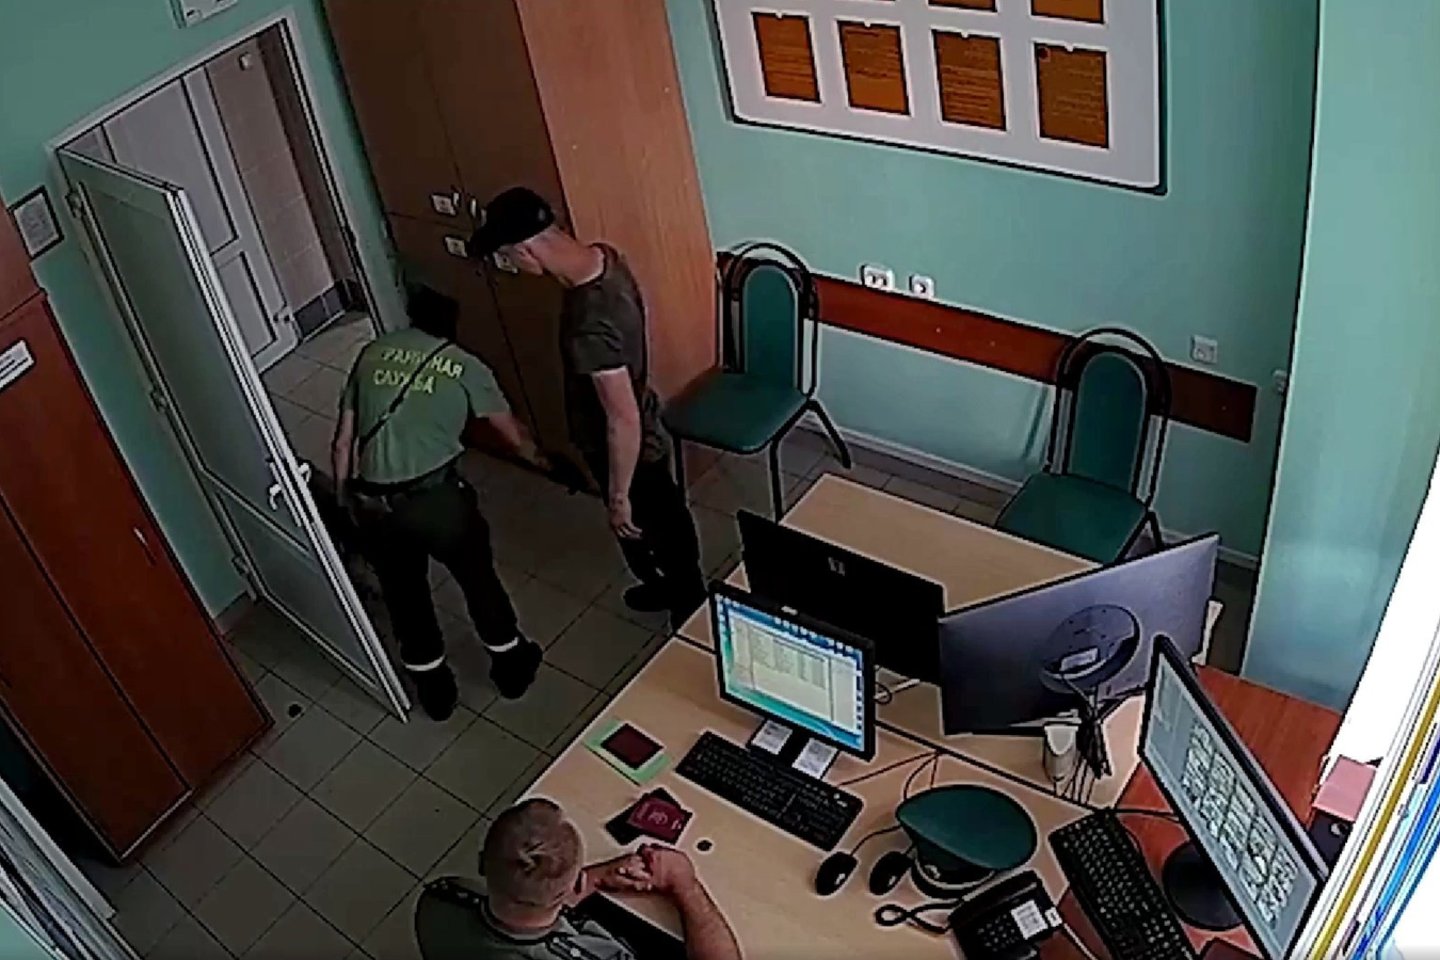  Baltarusiai pasienyje sulaikė lietuvį ir apkaltino jį narkotikų kontrabanda.<br> Stop kadras iš vaizdo medžiagos